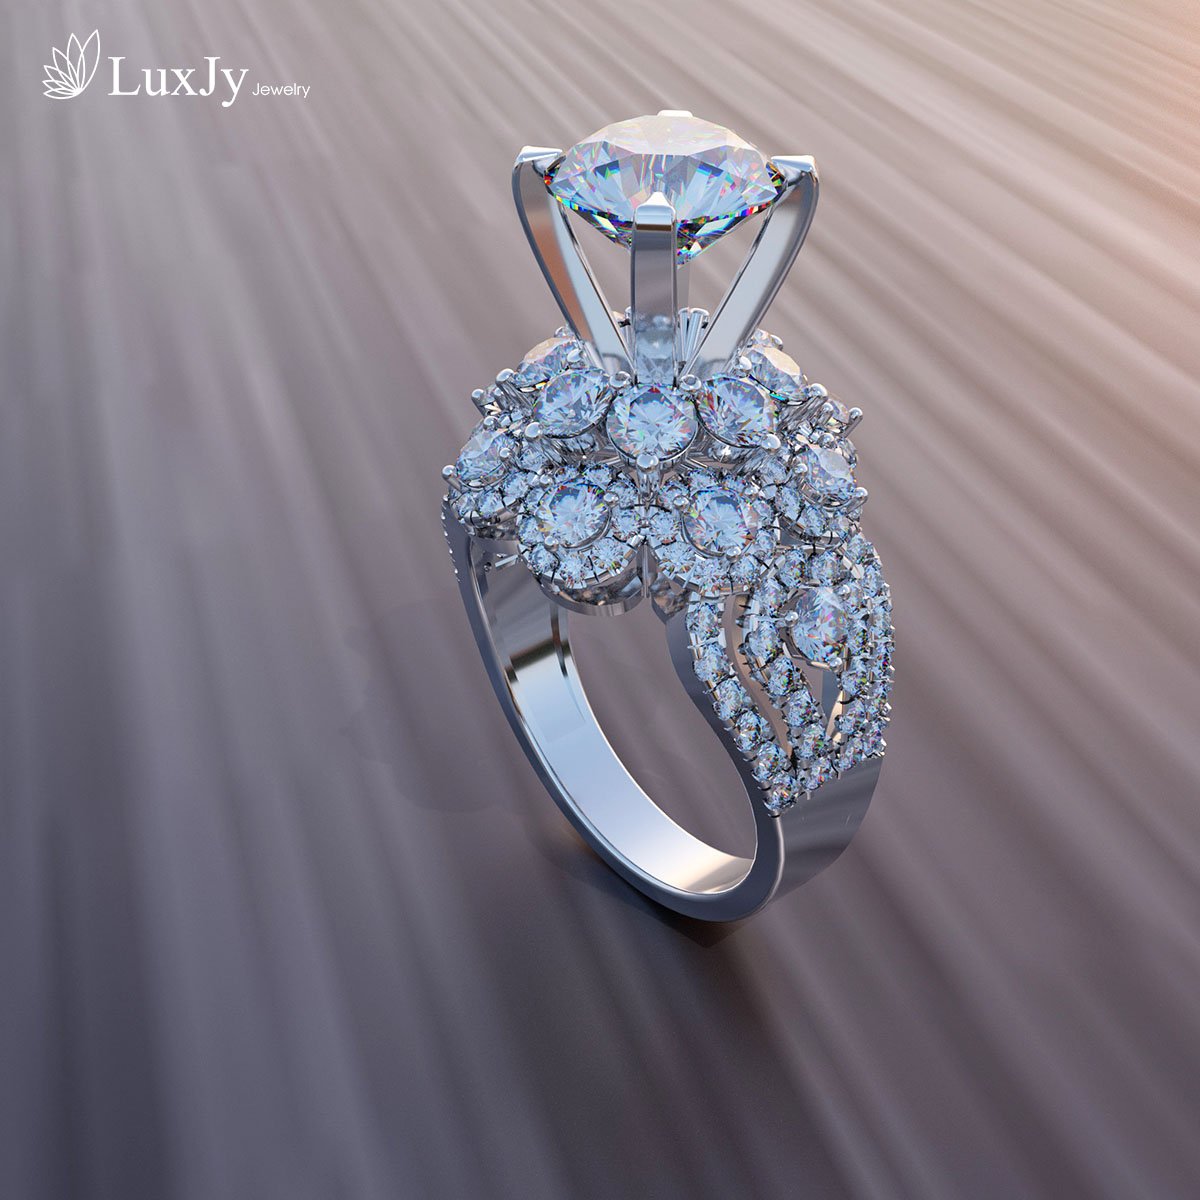 LuxJy Jewelry ảnh 2